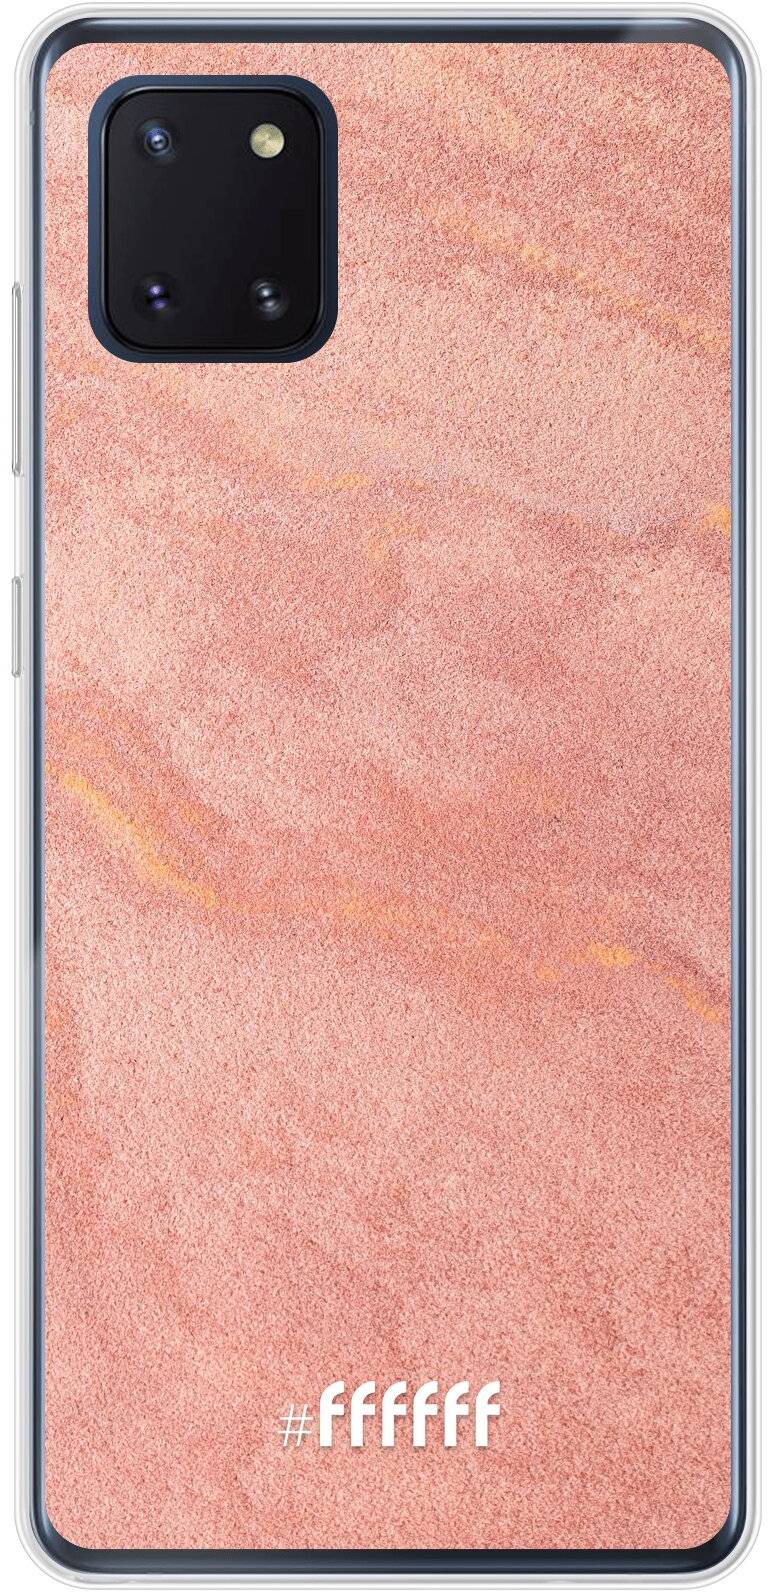 Sandy Pink Galaxy Note 10 Lite